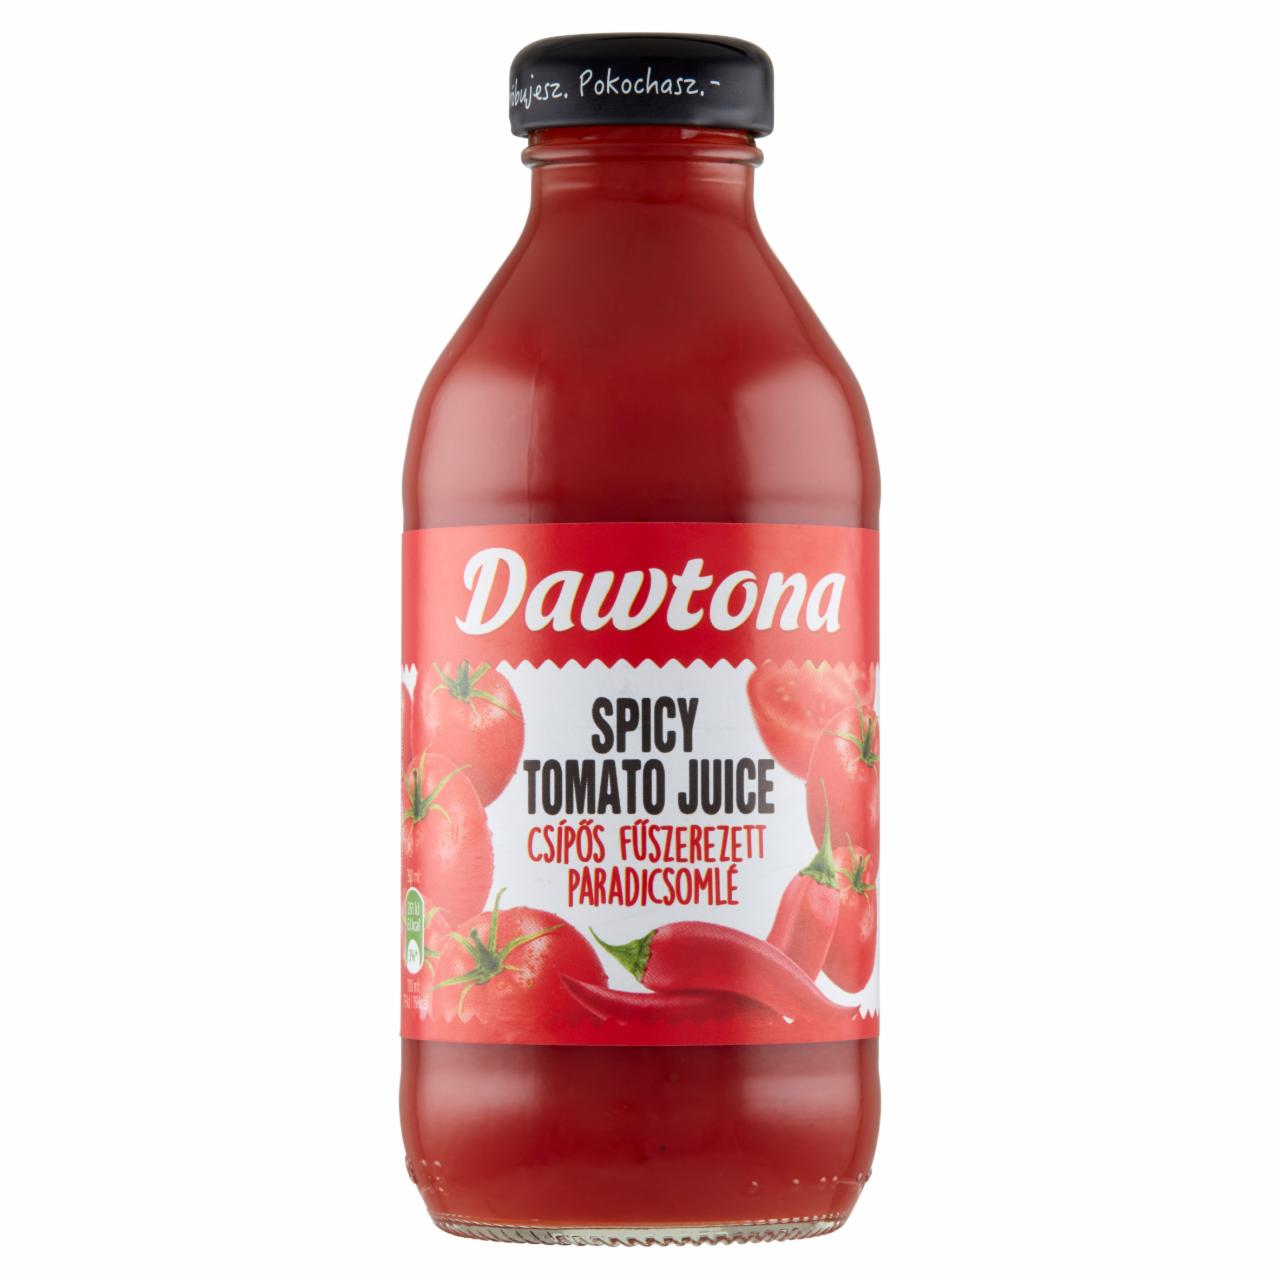 Képek - Dawtona csípős fűszerezett paradicsomlé 330 ml